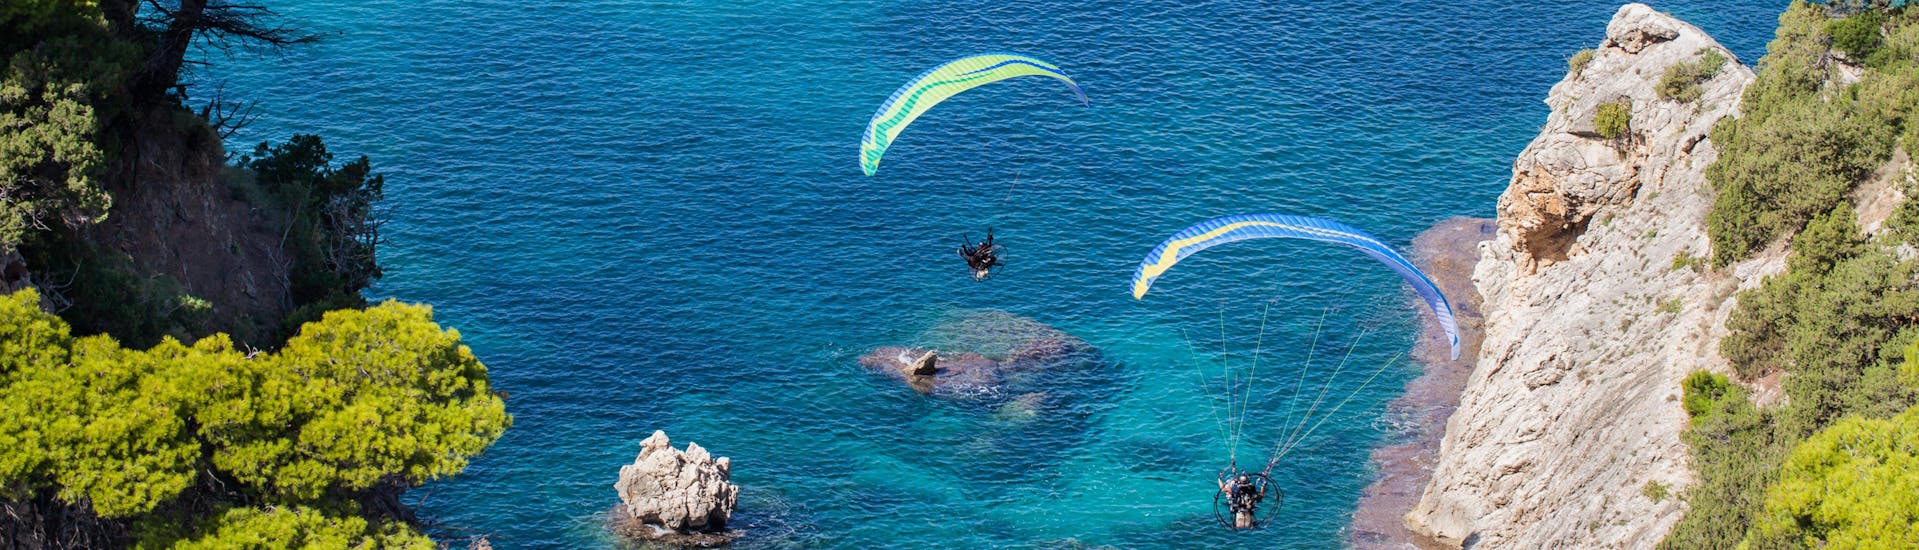 Un entusiasmado participante en un vuelo en parapente biplaza sobrevuela Falassarna, uno de los sitios más populares para volar en parapente.